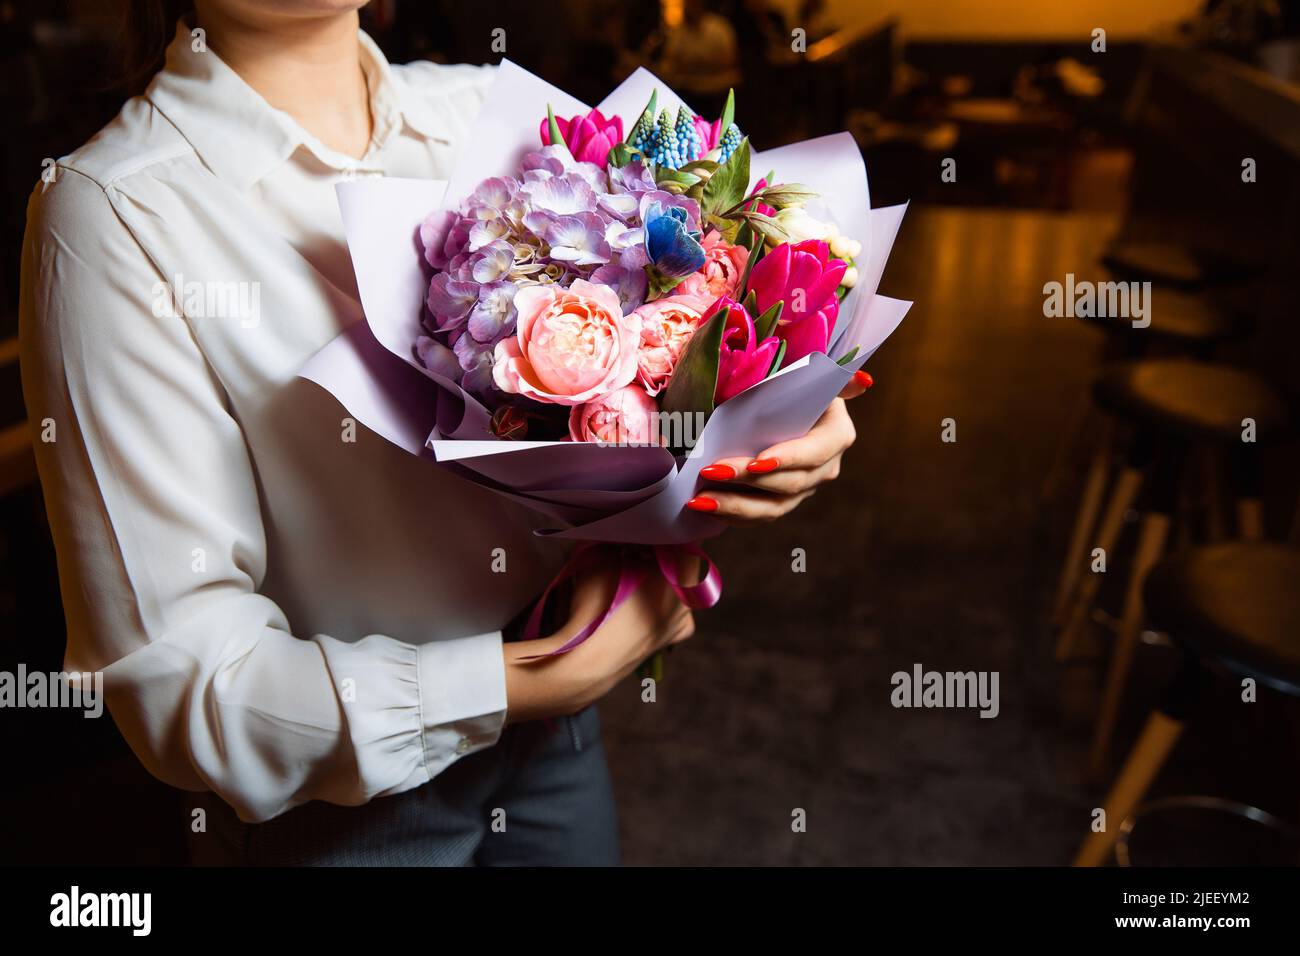 Das Mädchen hält in ihrer Hand einen herrlichen Strauß mit bunten frischen Blumen Stockfoto